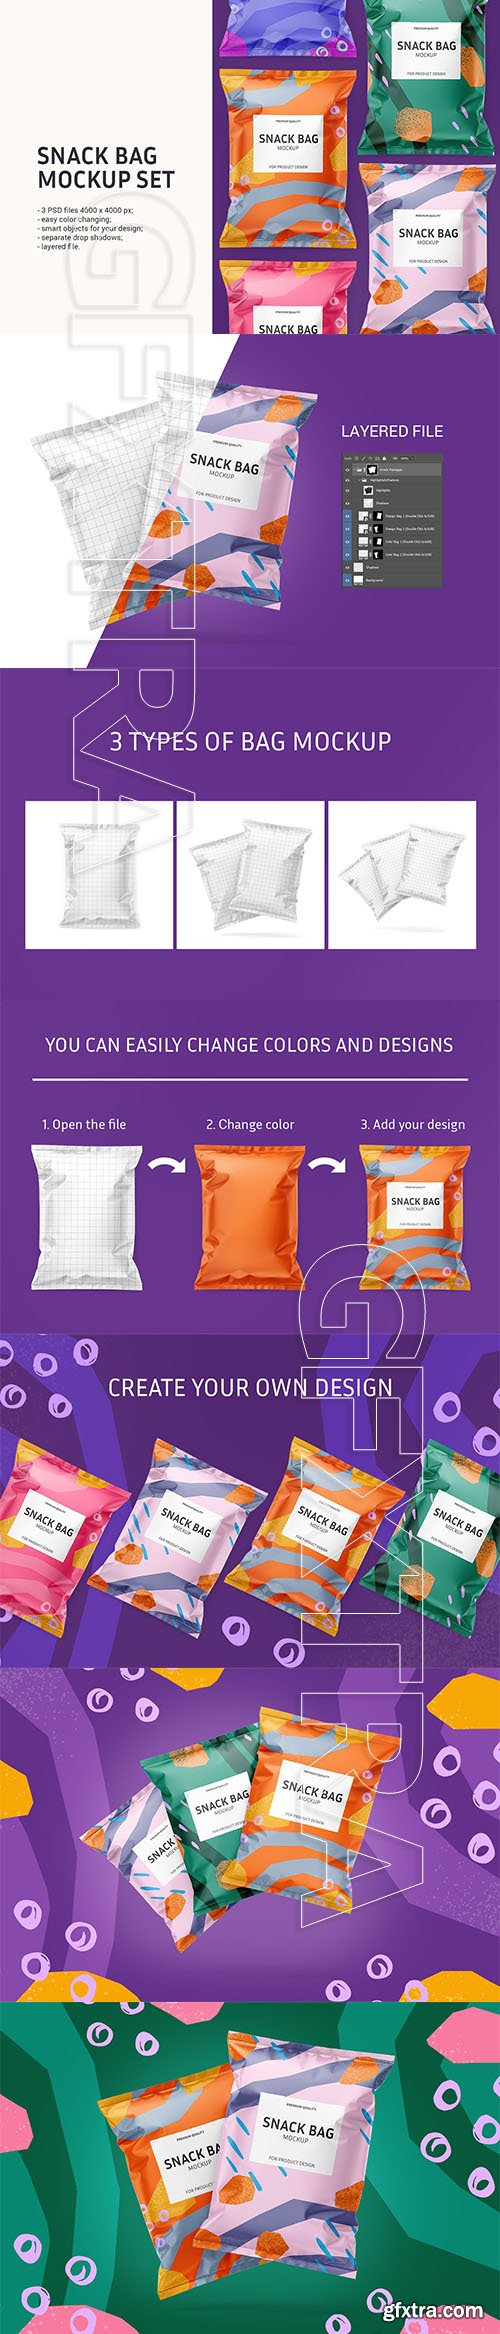 CreativeMarket - Snack bag mockup set 5960687